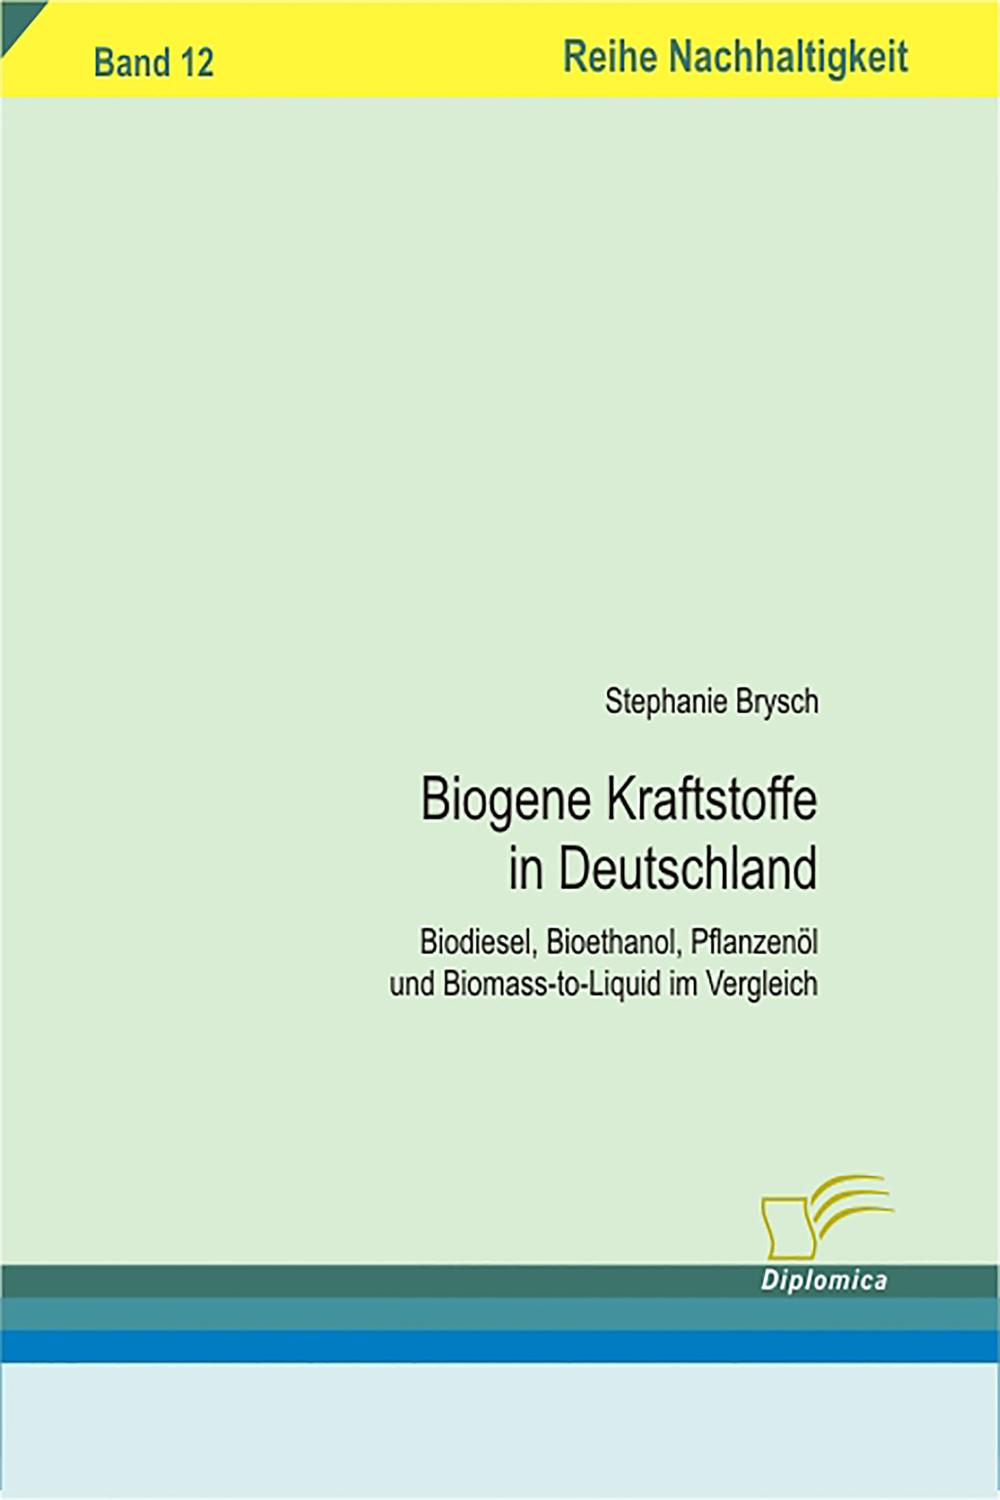 Biogene Kraftstoffe in Deutschland - Stephanie Brysch